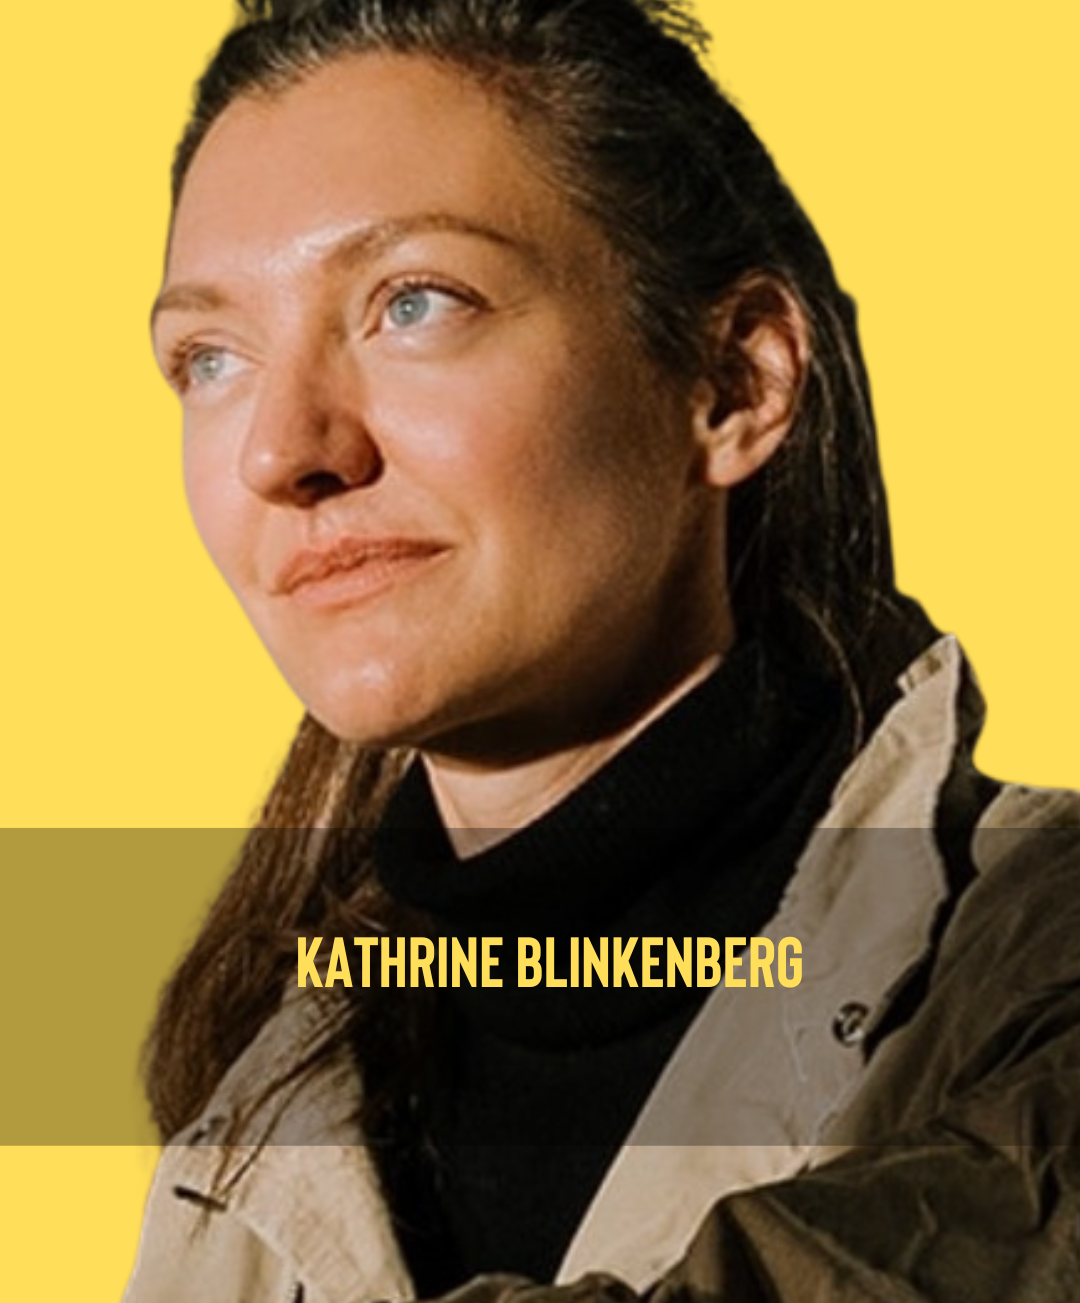 Kathrine Blinkenberg